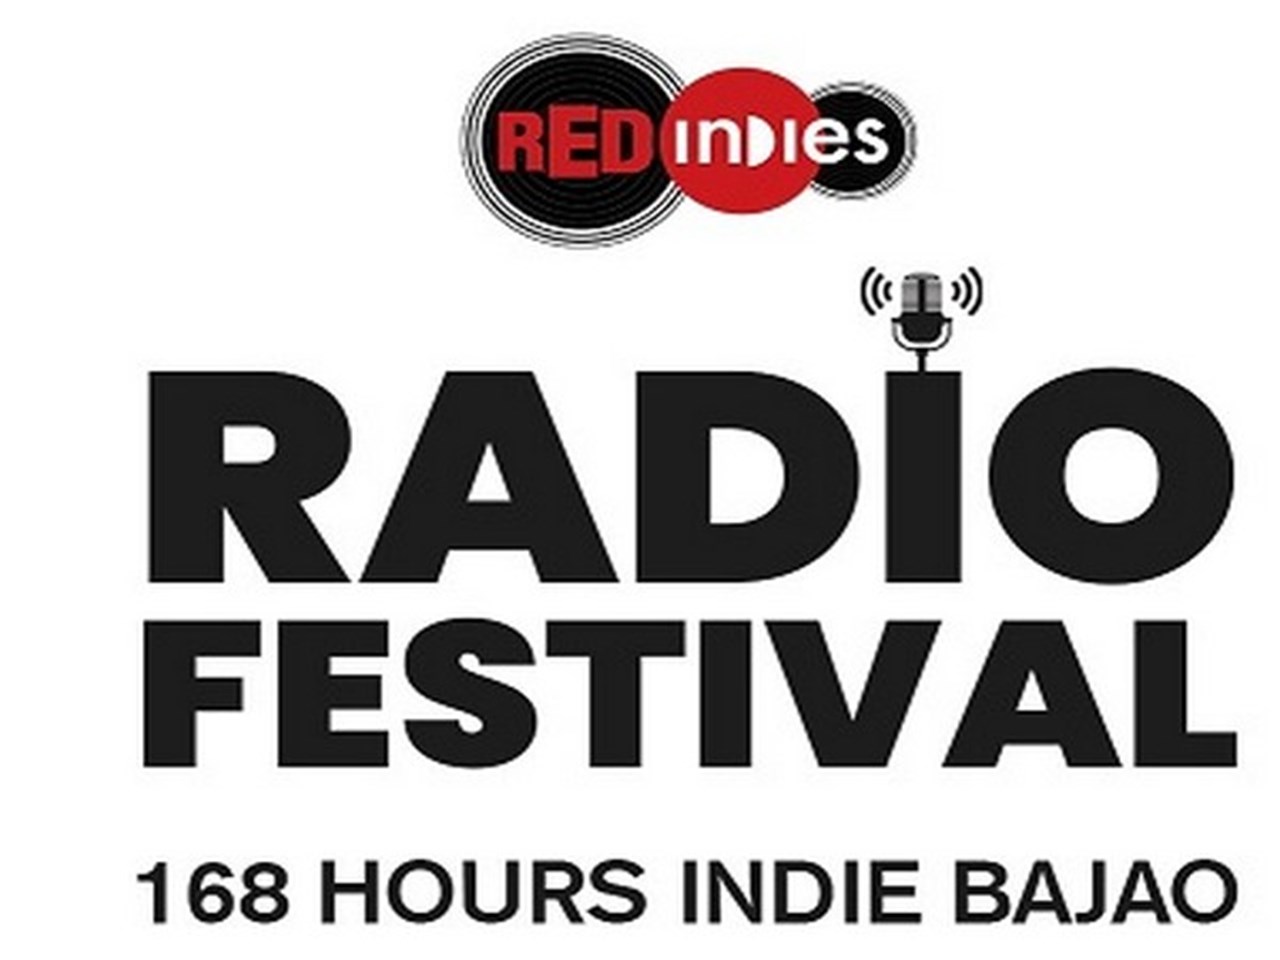 Инди радио. Радио ред. Festivals радио. Private Radio группа.